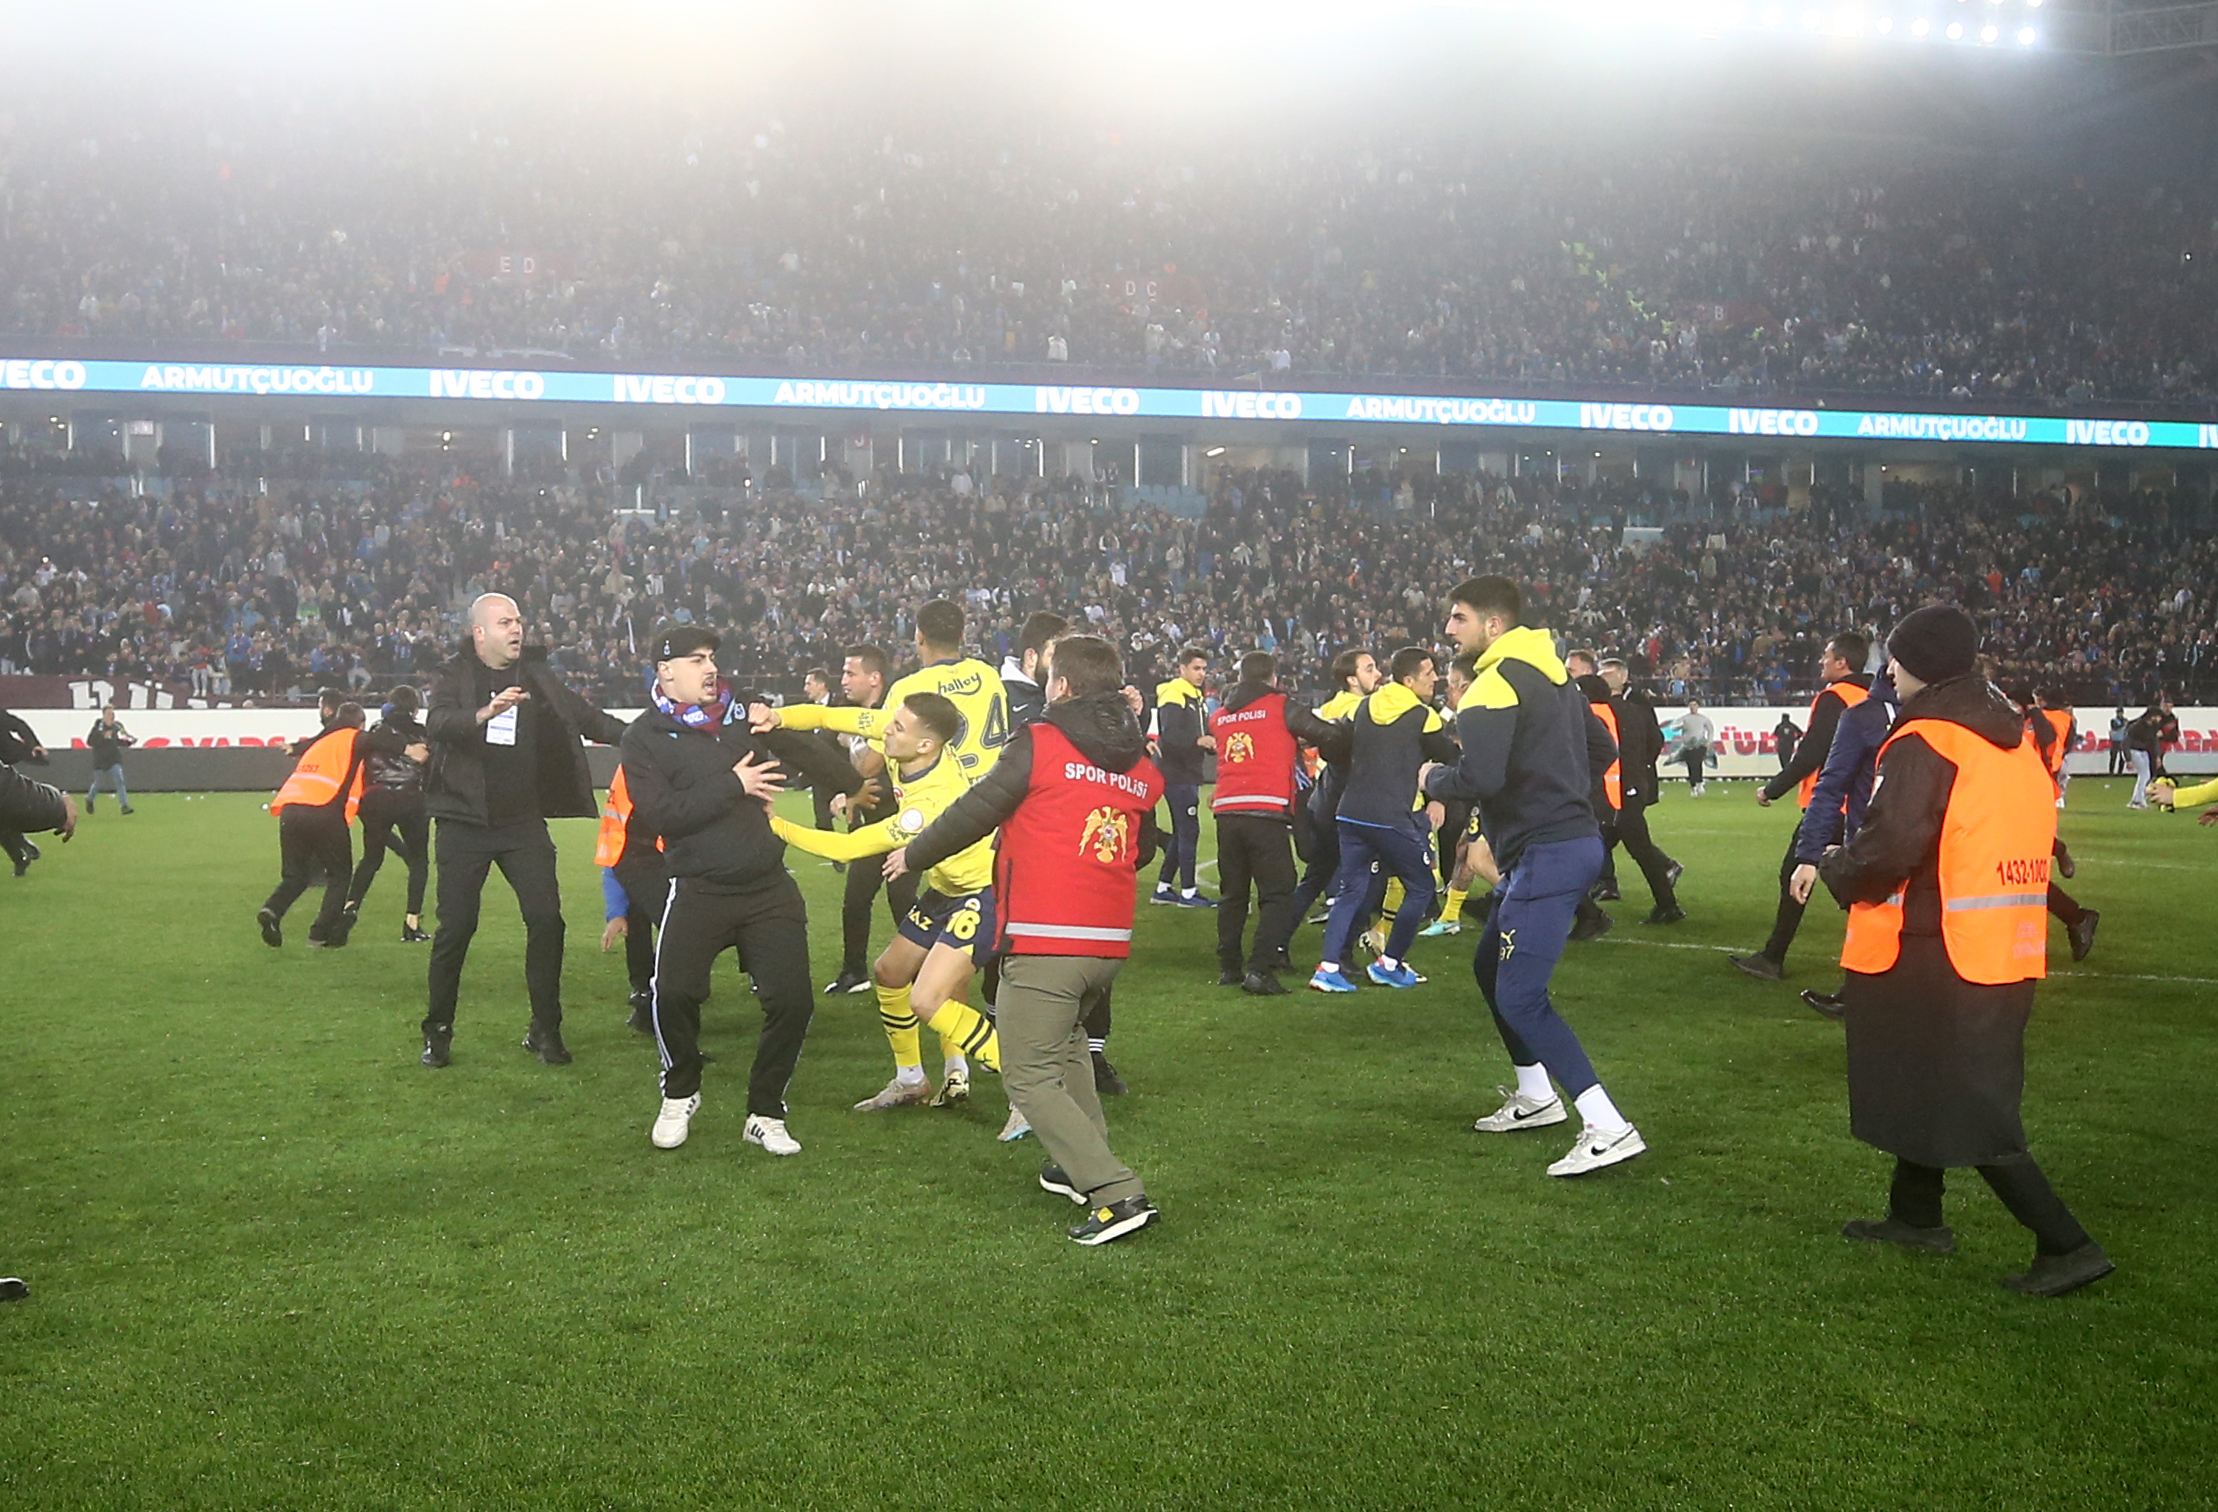 Josef de Souza: Fenerbahçeli futbolcular onurlandırılmalı